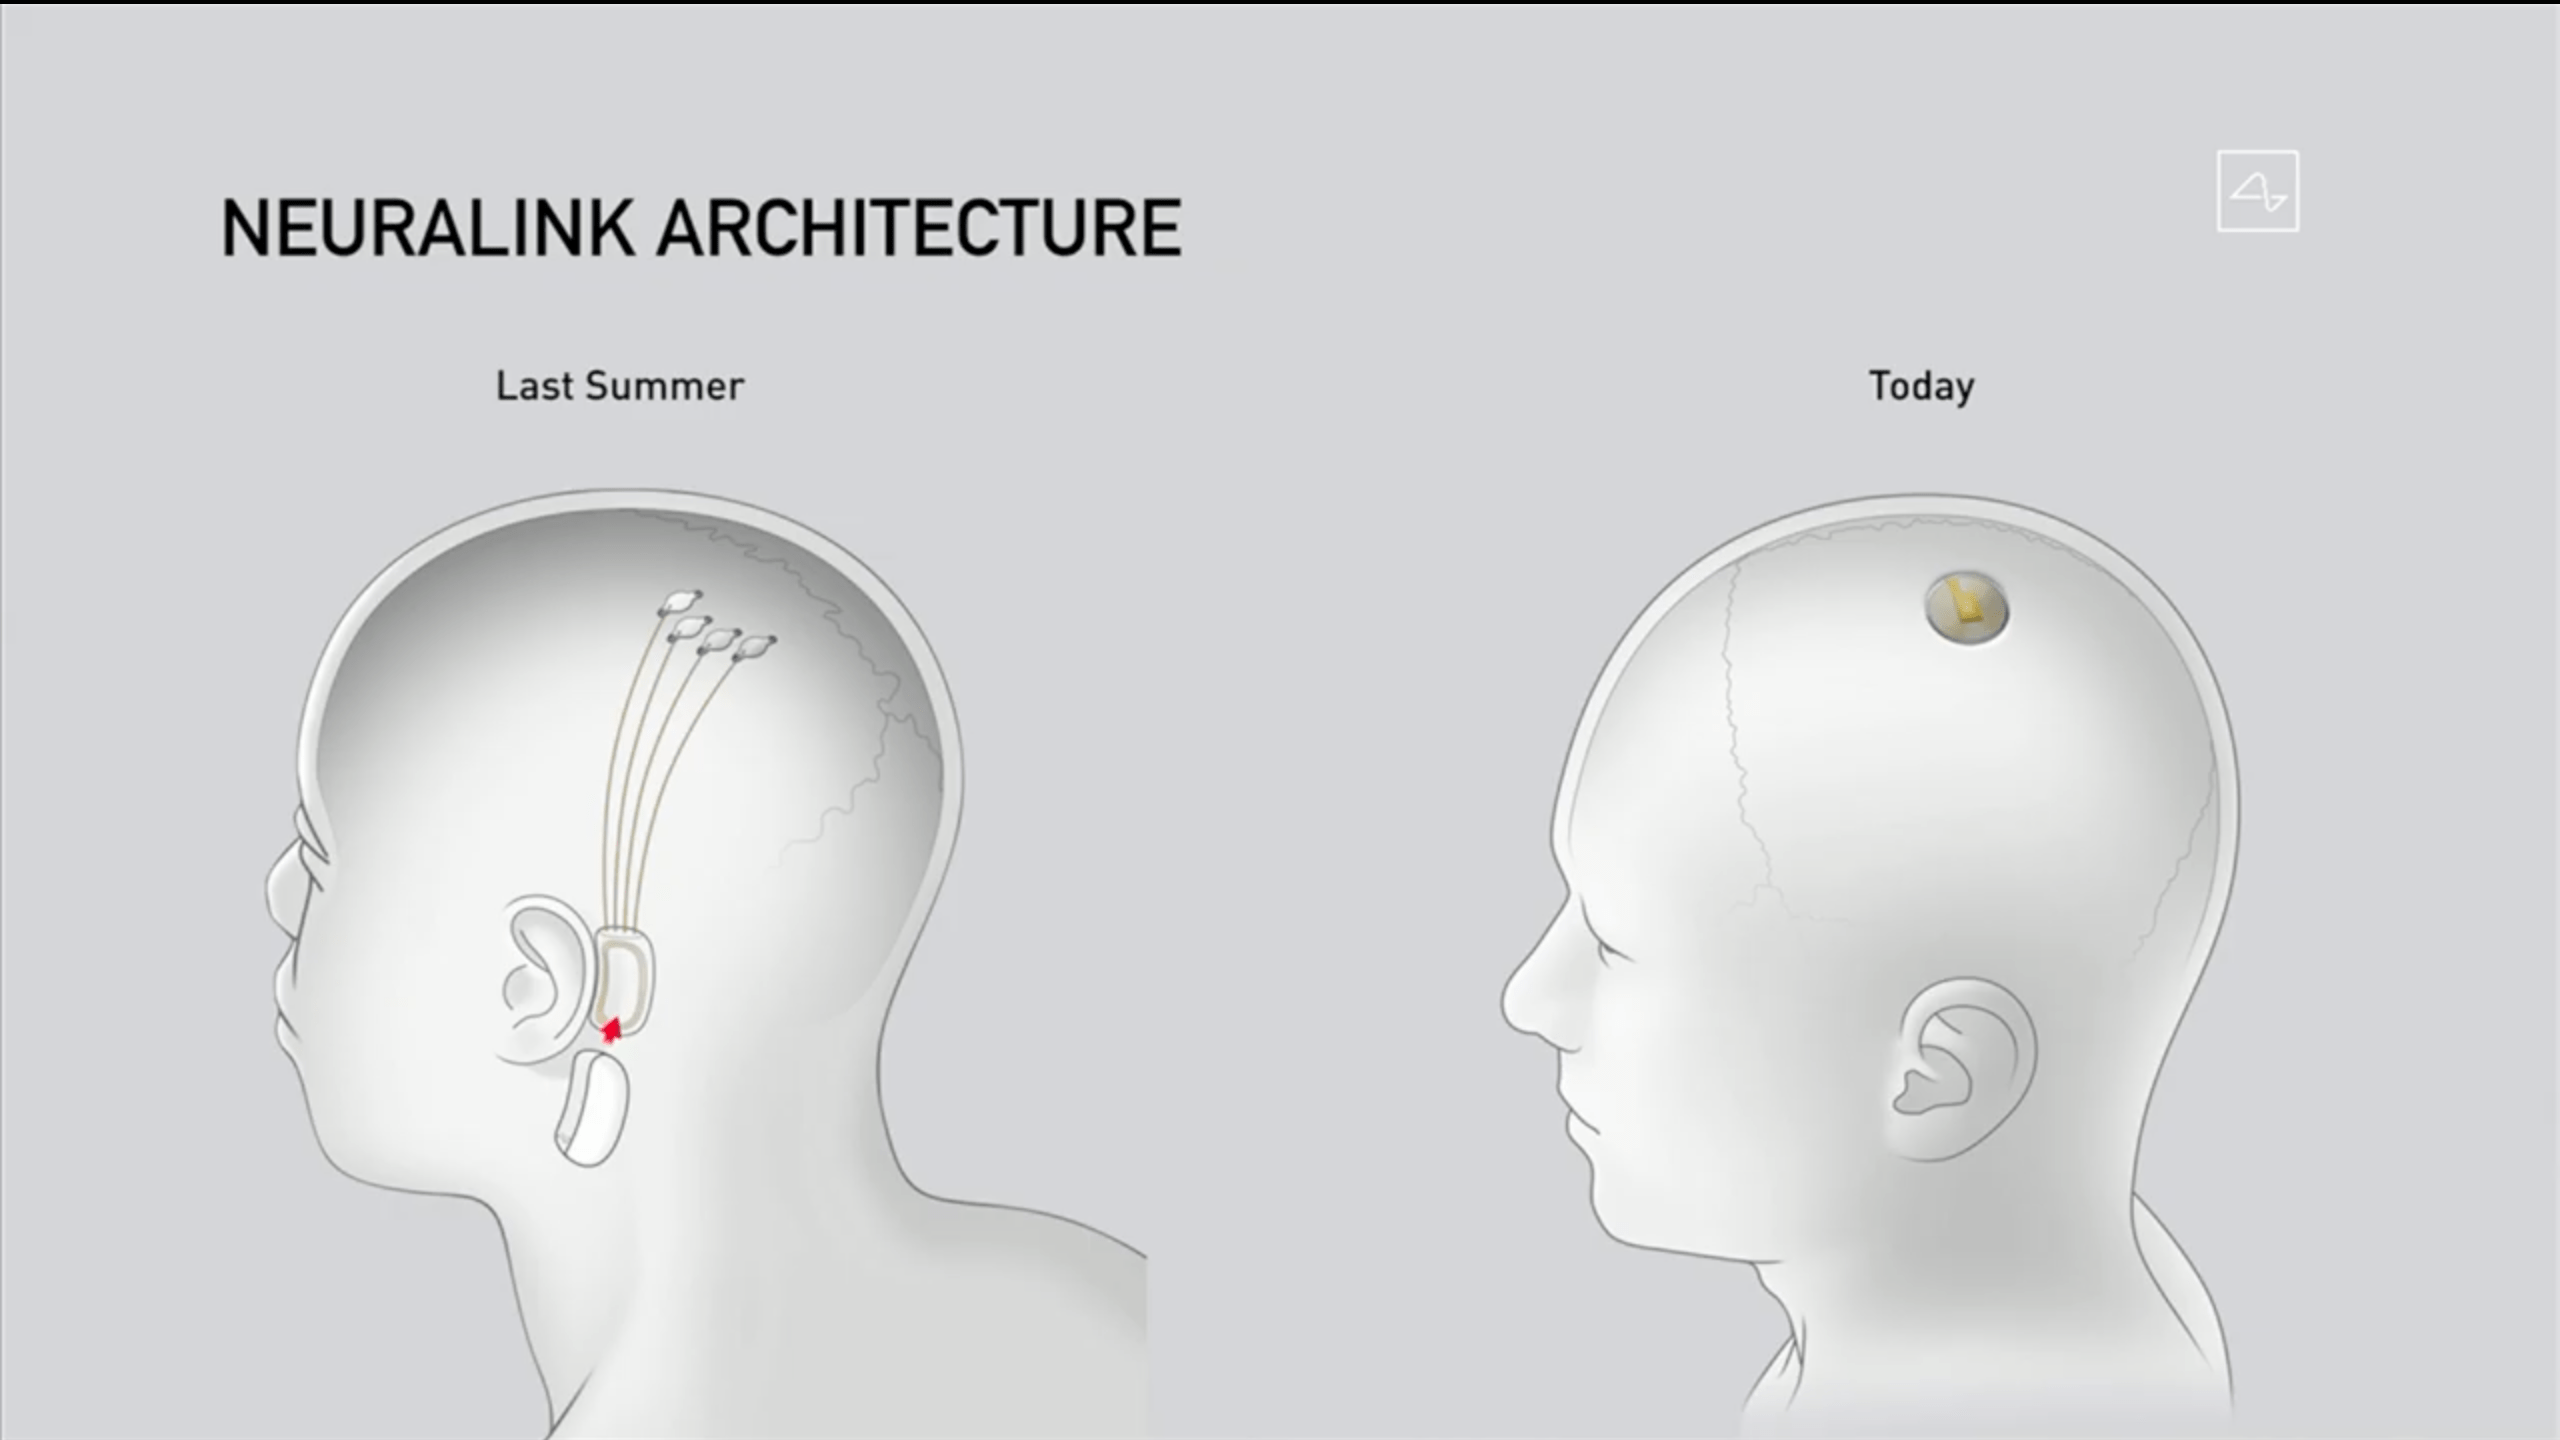 马斯克的脑机接口公司neuralink举行现场直播,展示了一头植入neural